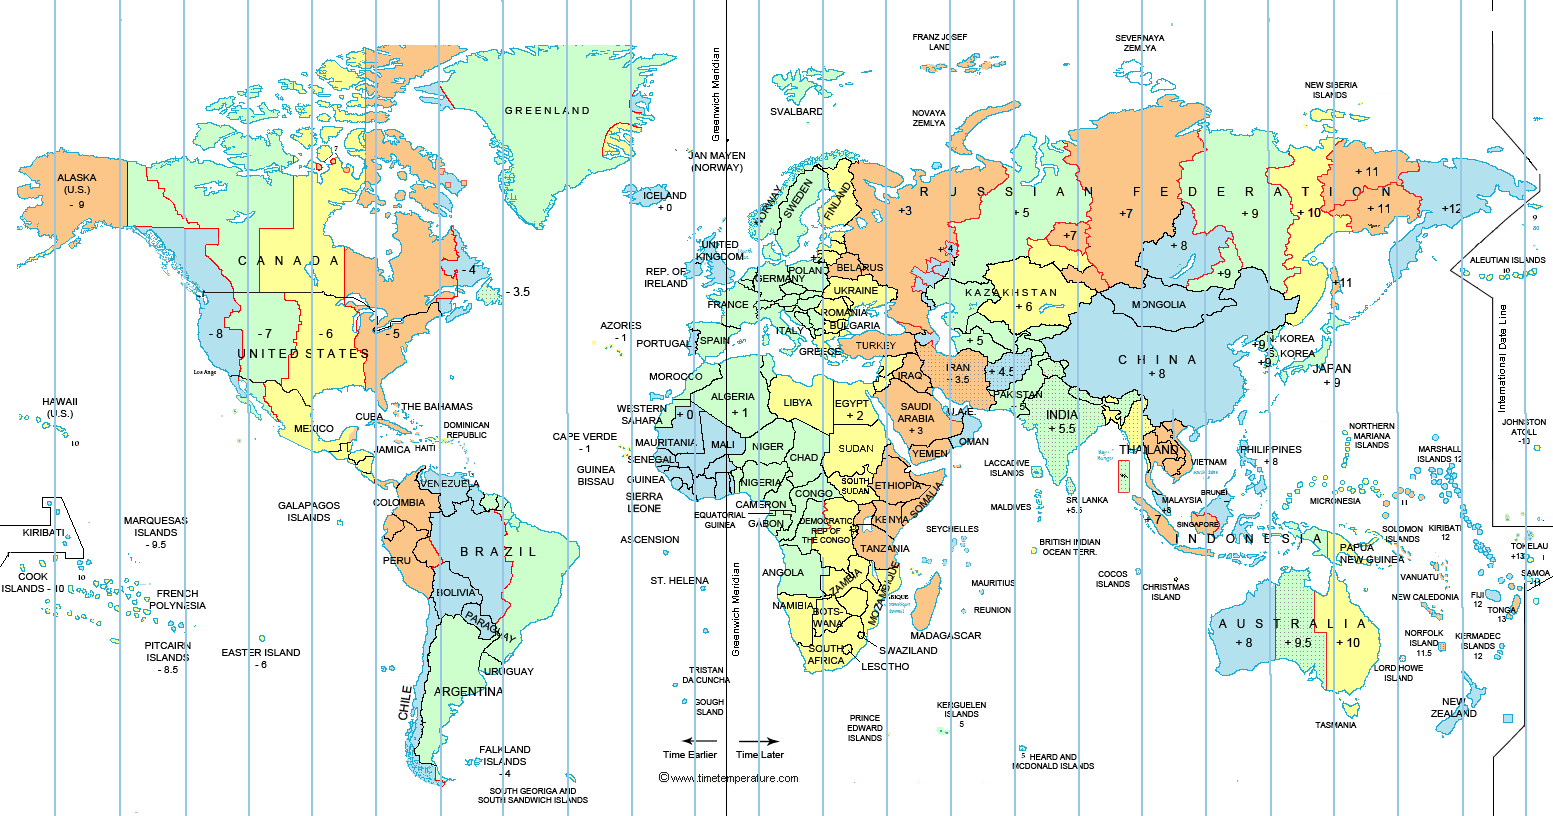 expanded-world-time-zone-map-longitude.g